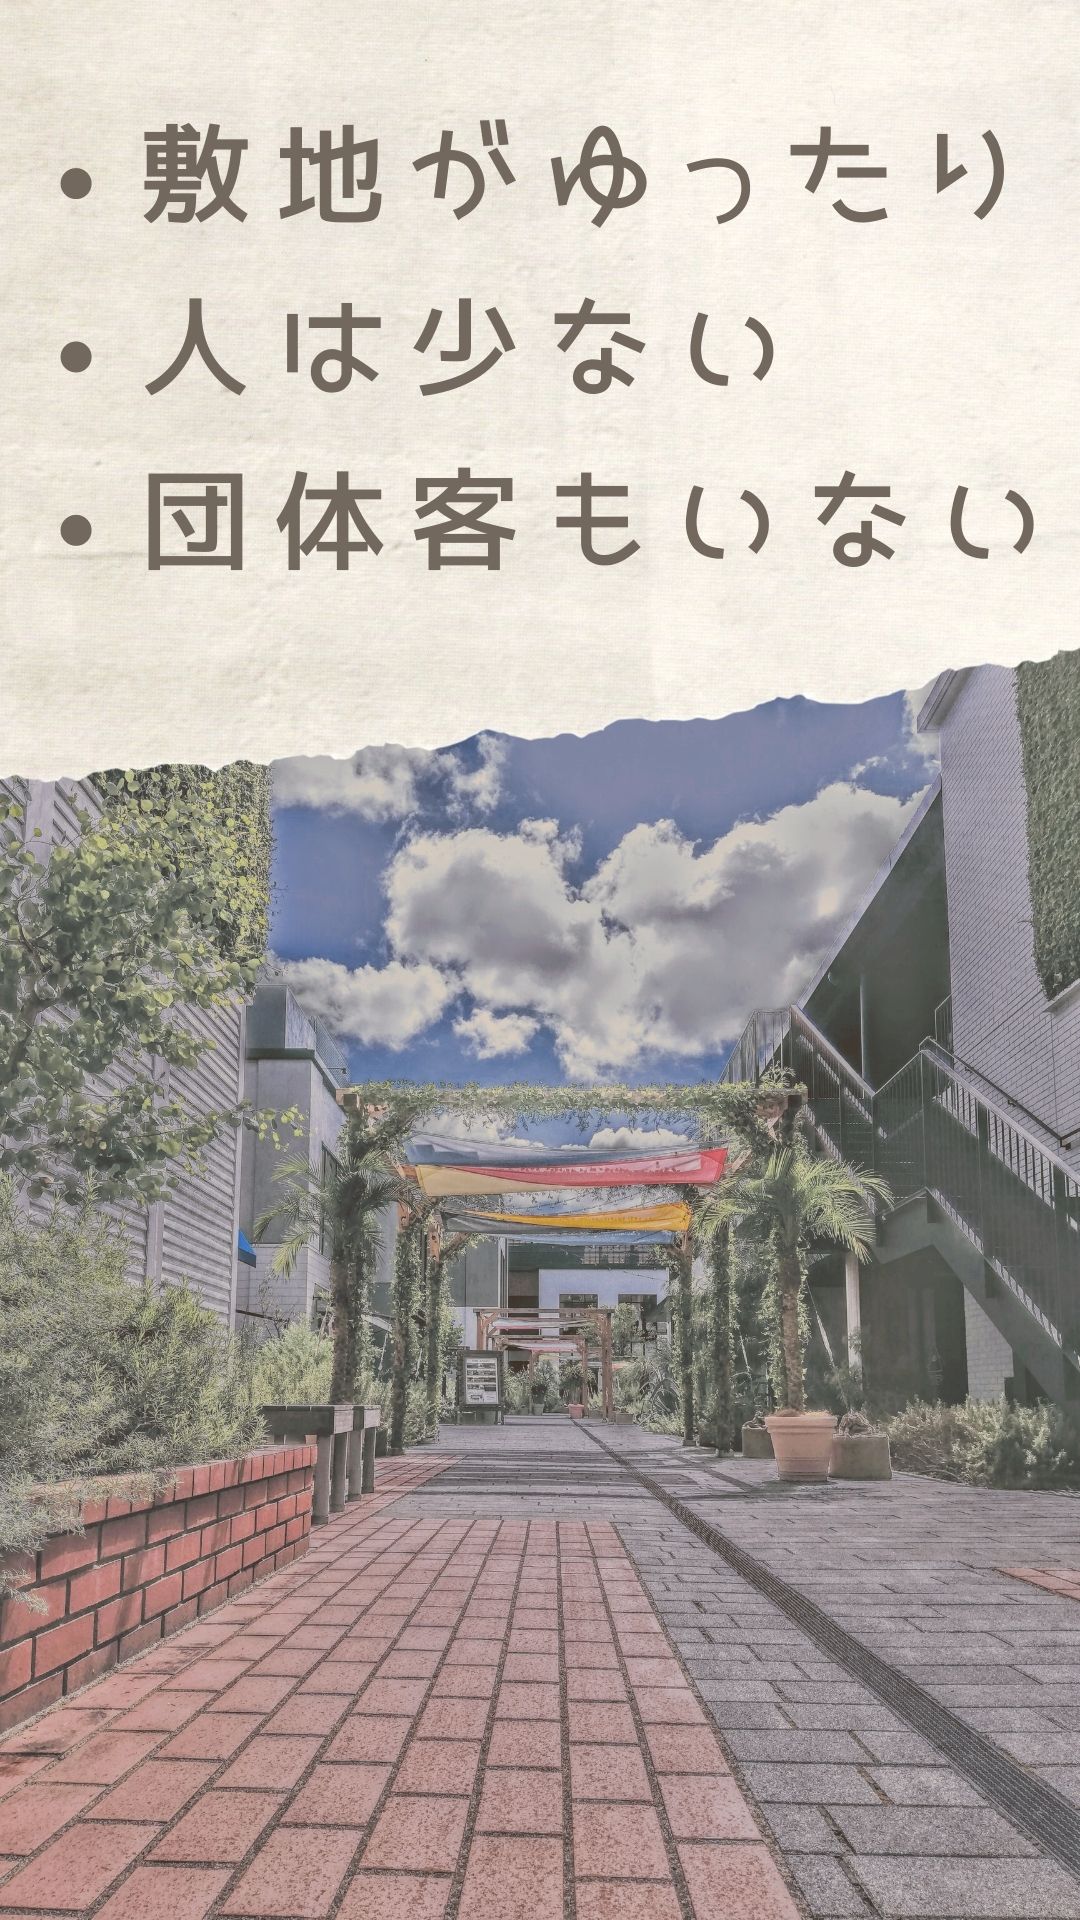 【別世界！】横浜おしゃれデート狙いなら「マリン&ウォーク Yokohama」がおすすめのイラスト画像